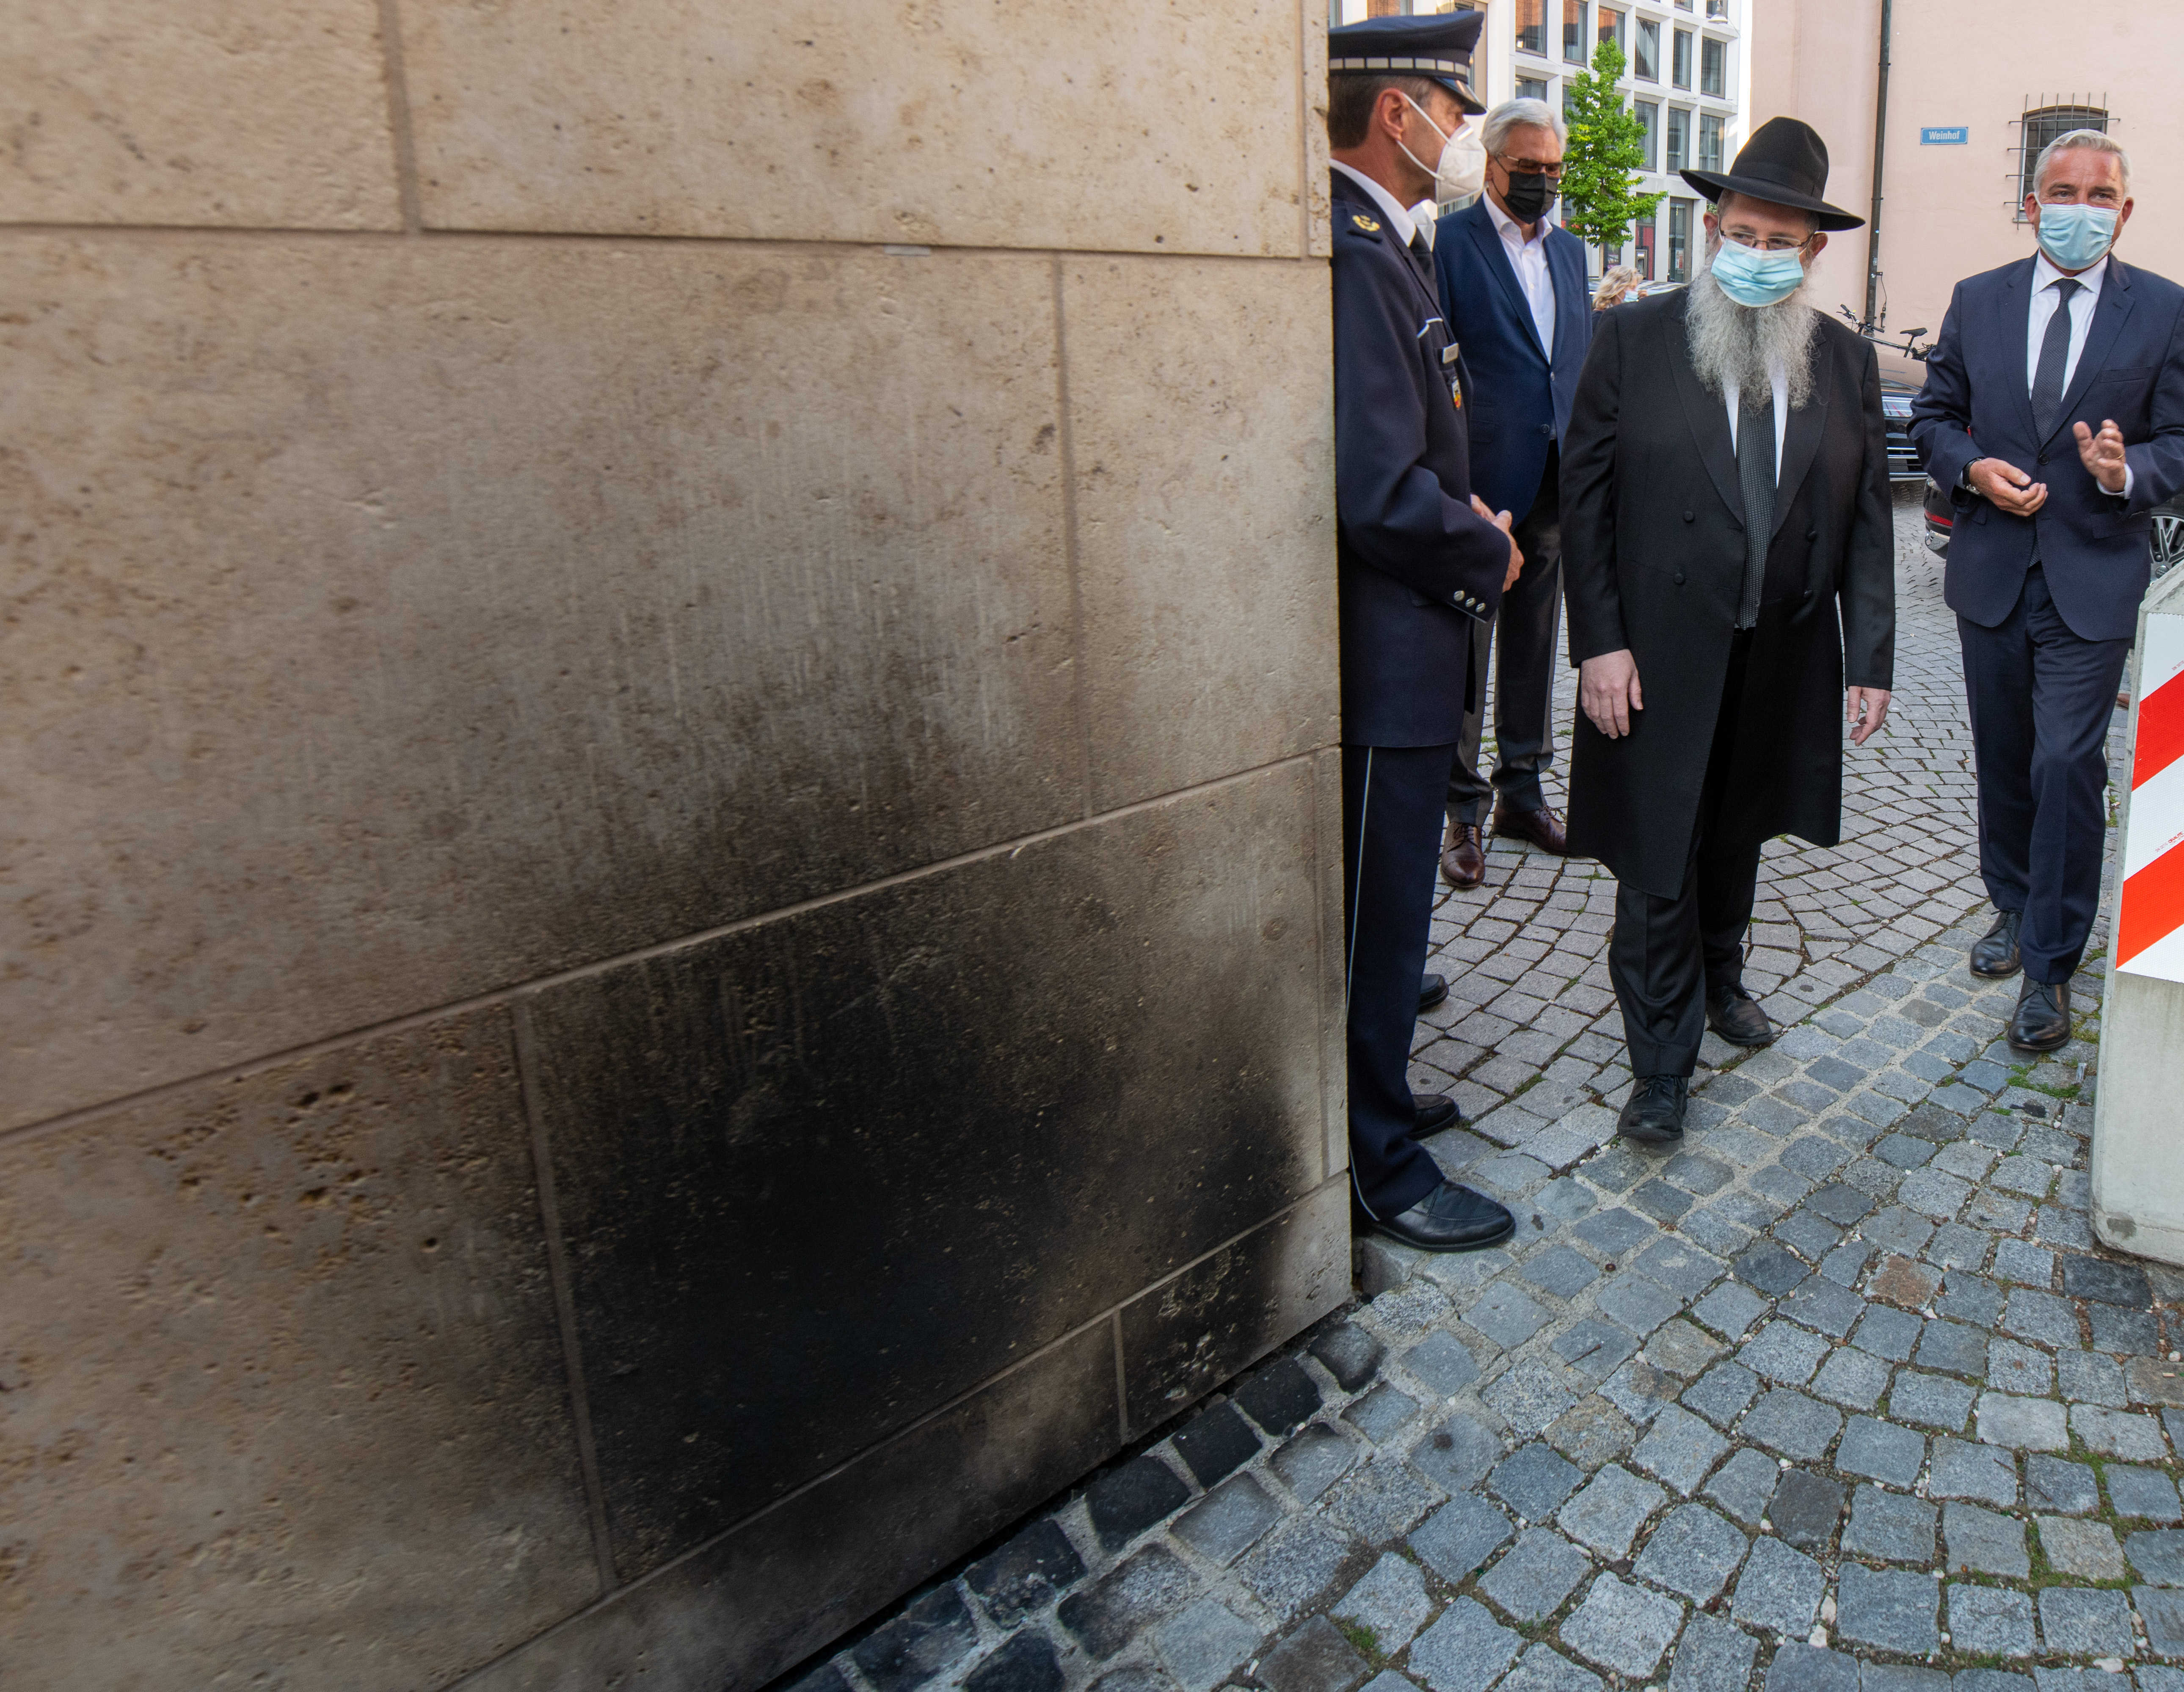 Brandstiftung an einer Synagoge in Ulm am 5. Juni 2021